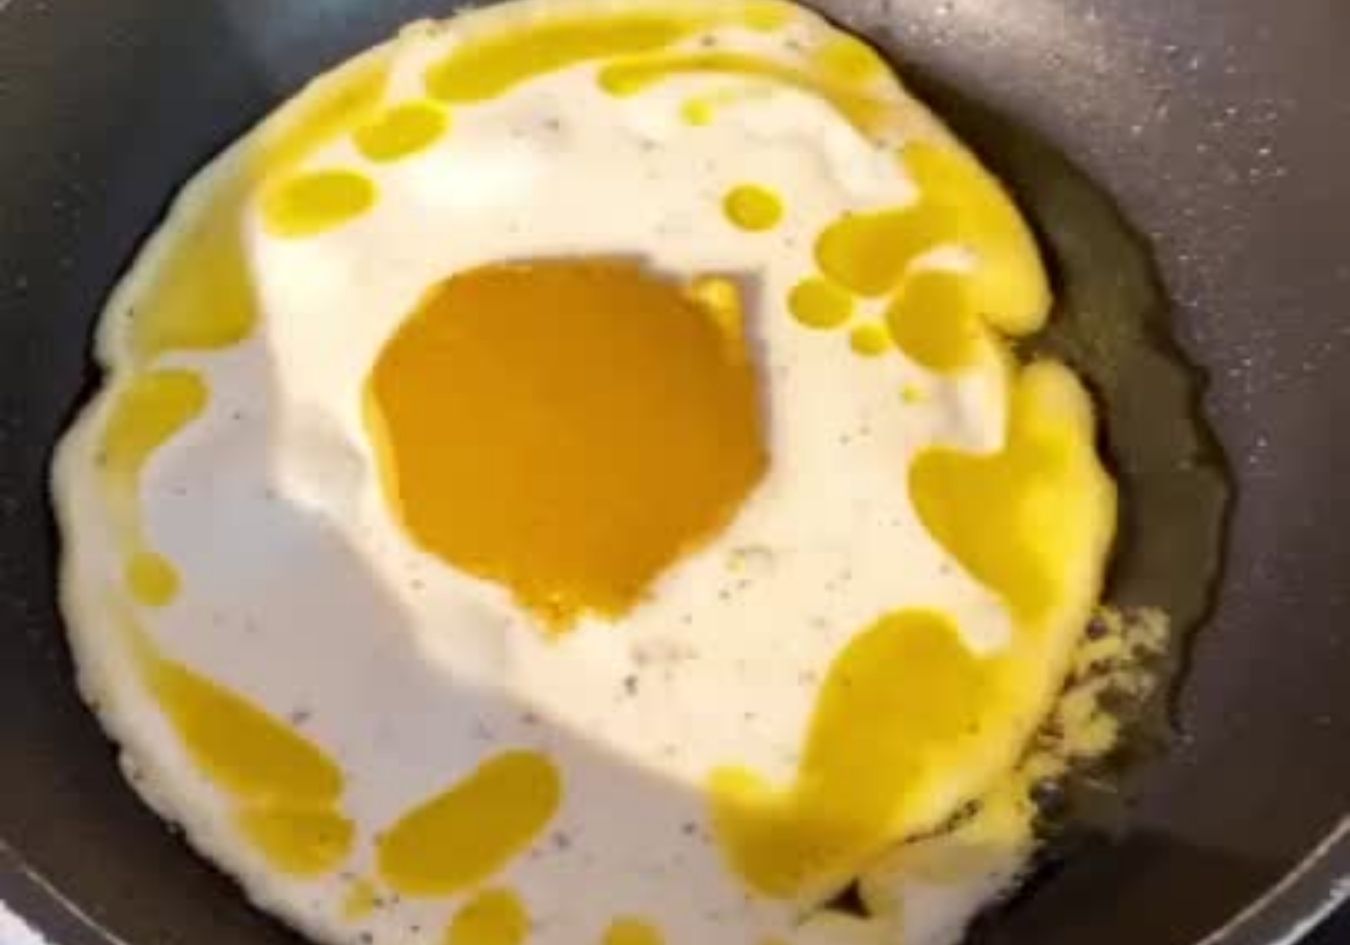 Vegan fried egg experiment